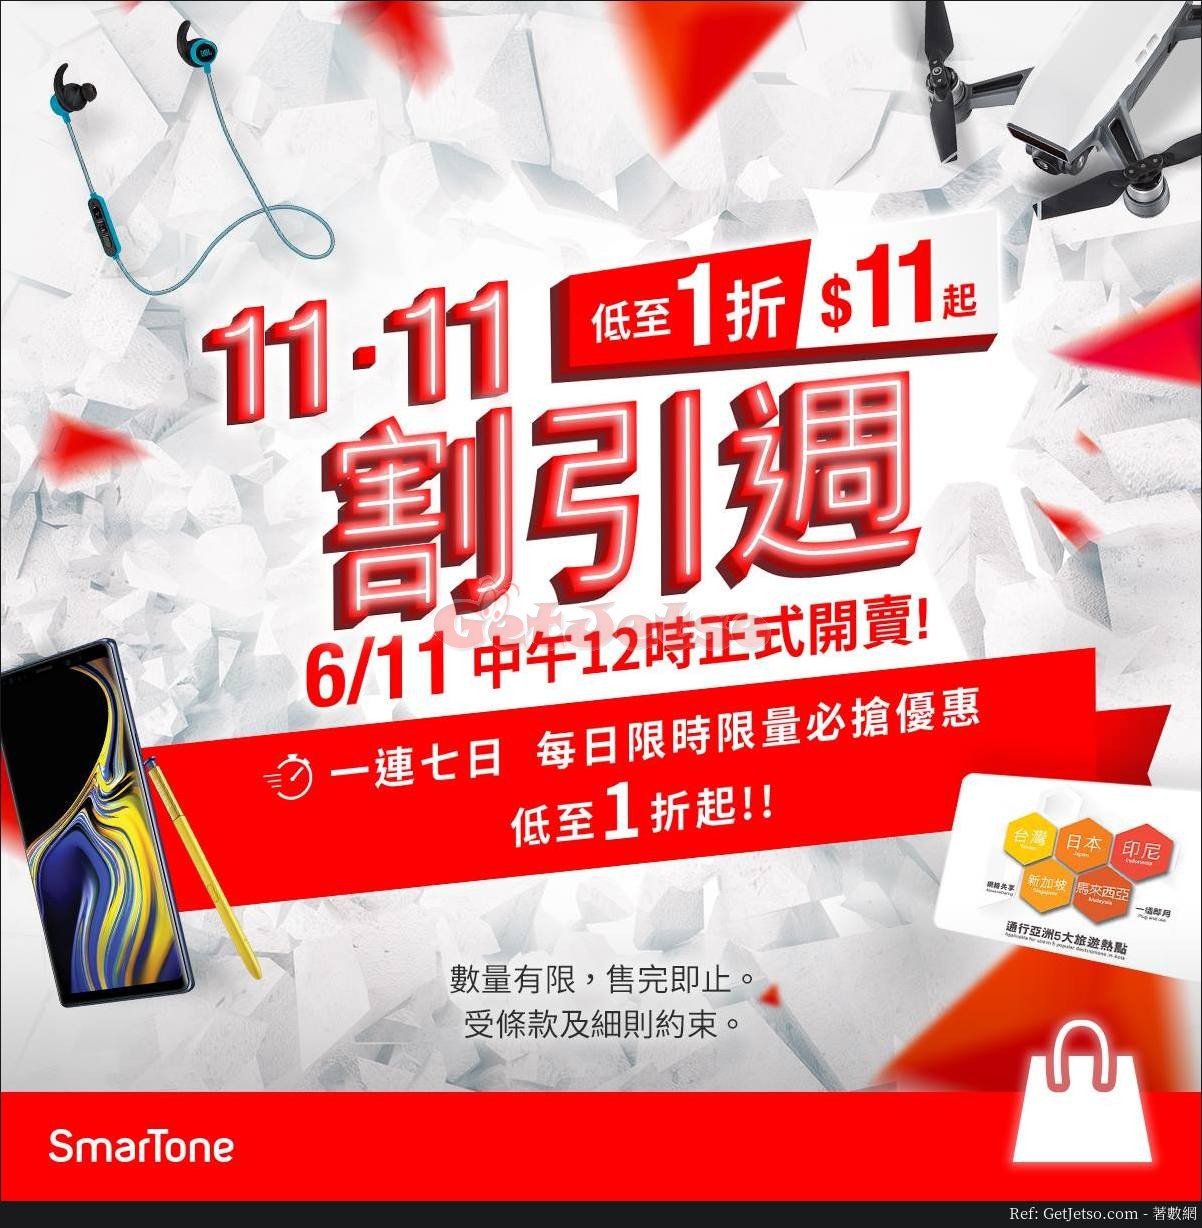 Smartone 網店低至1折雙11減價優惠(18年11月6-11日)圖片1